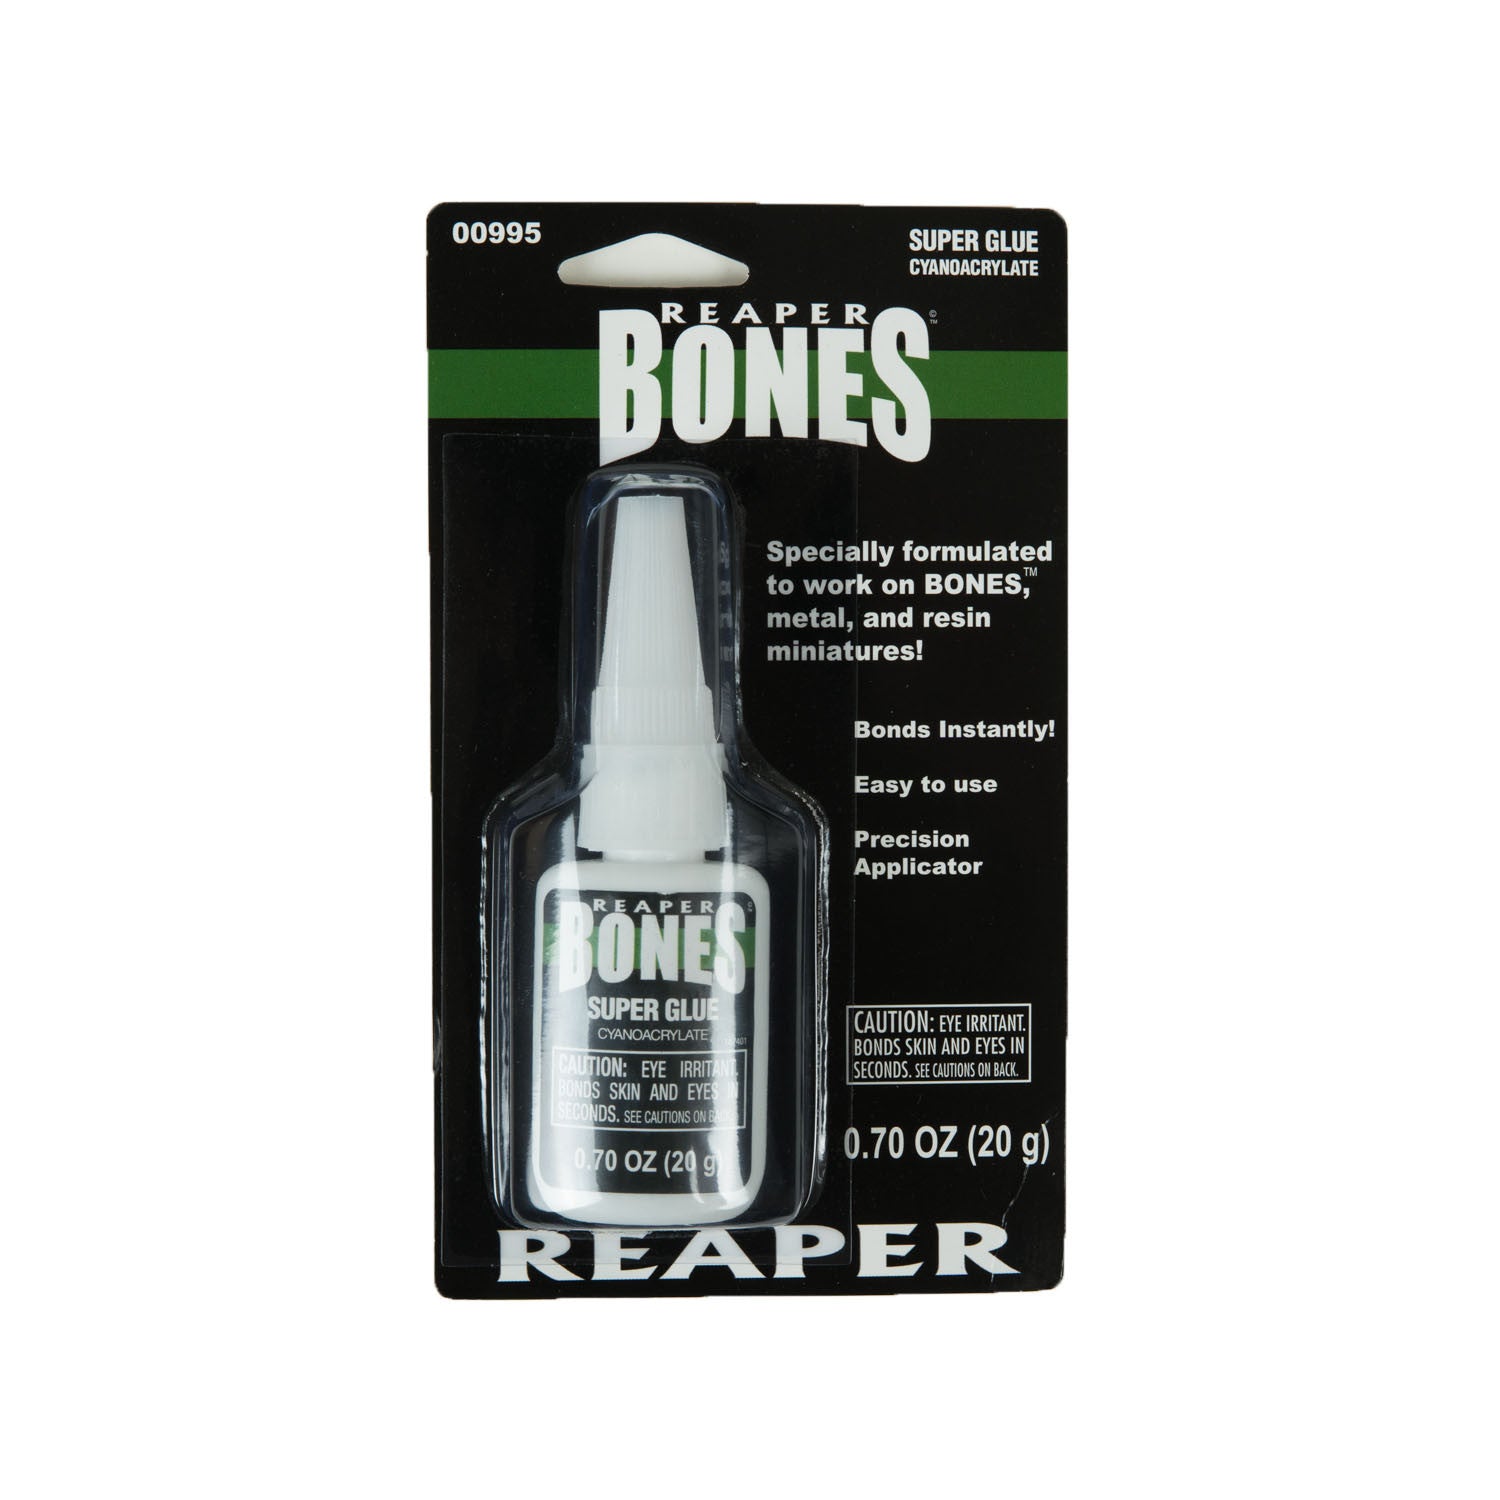 Reaper 00995 Reaper Bones Super Glue